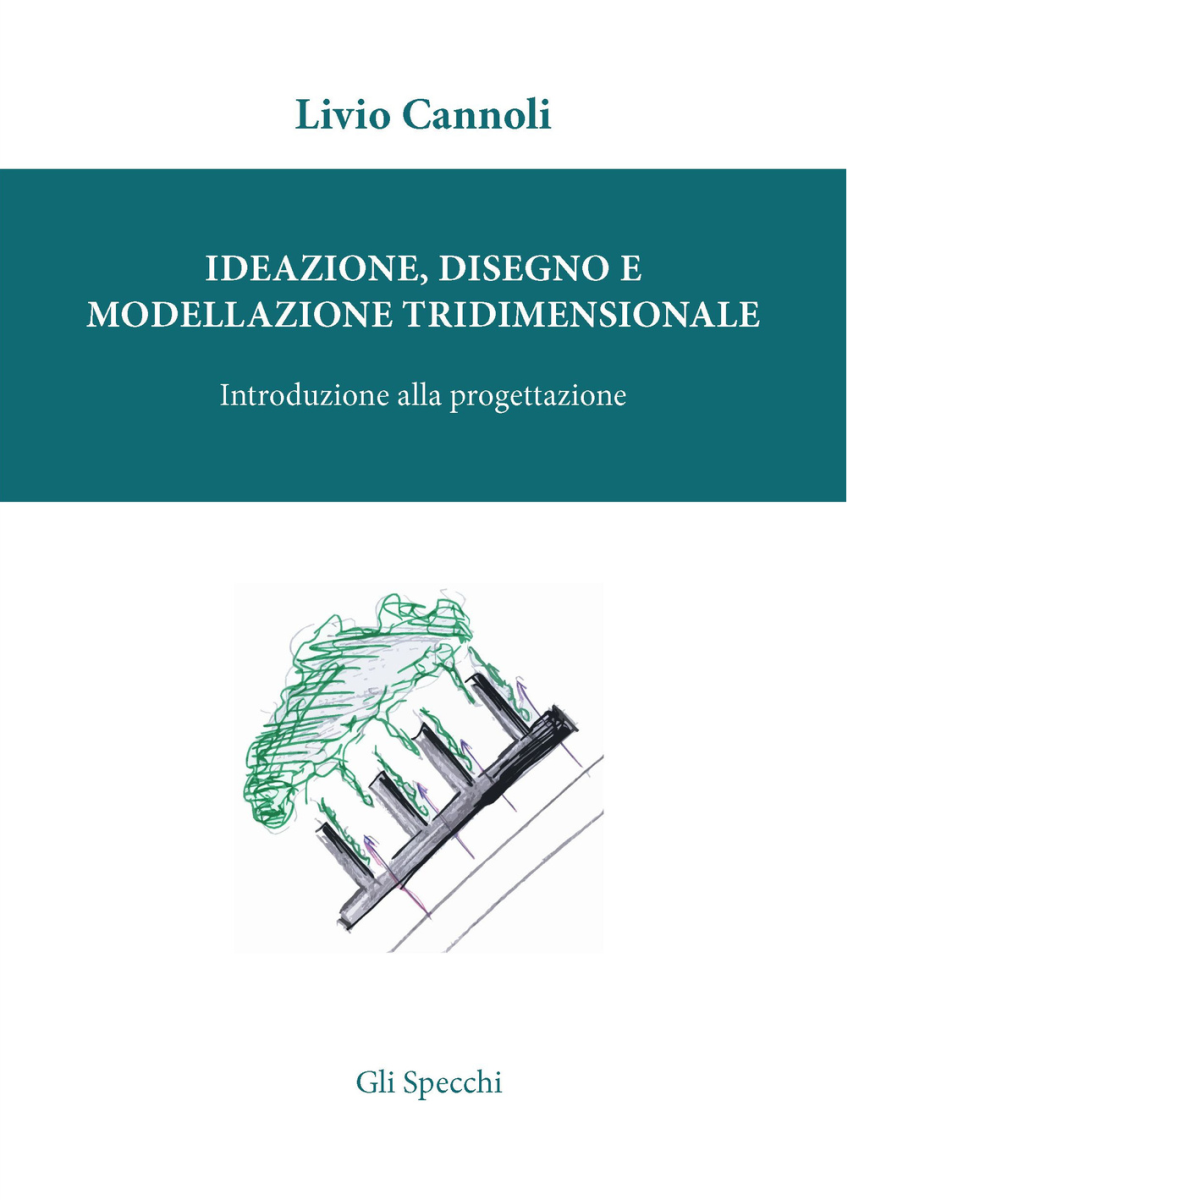 Ideazione, disegno e modellazione tridimensionale di Cannoli Livio - 2015